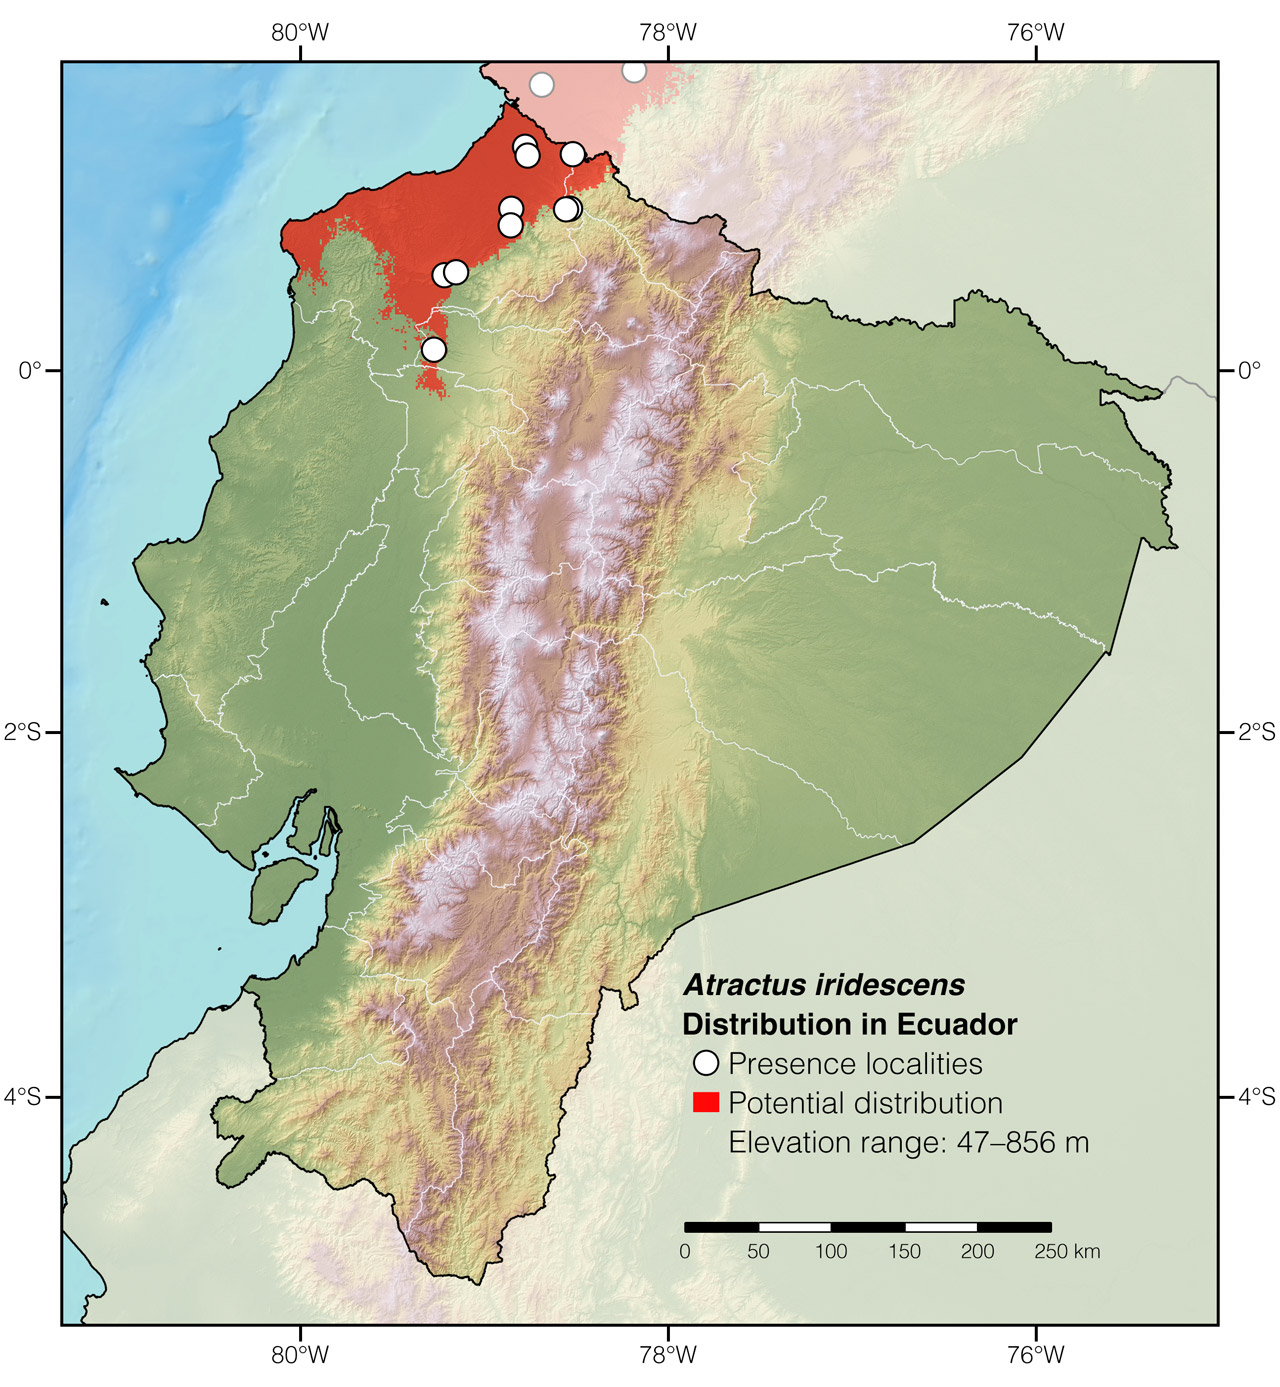 Distribution of Atractus iridescens in Ecuador